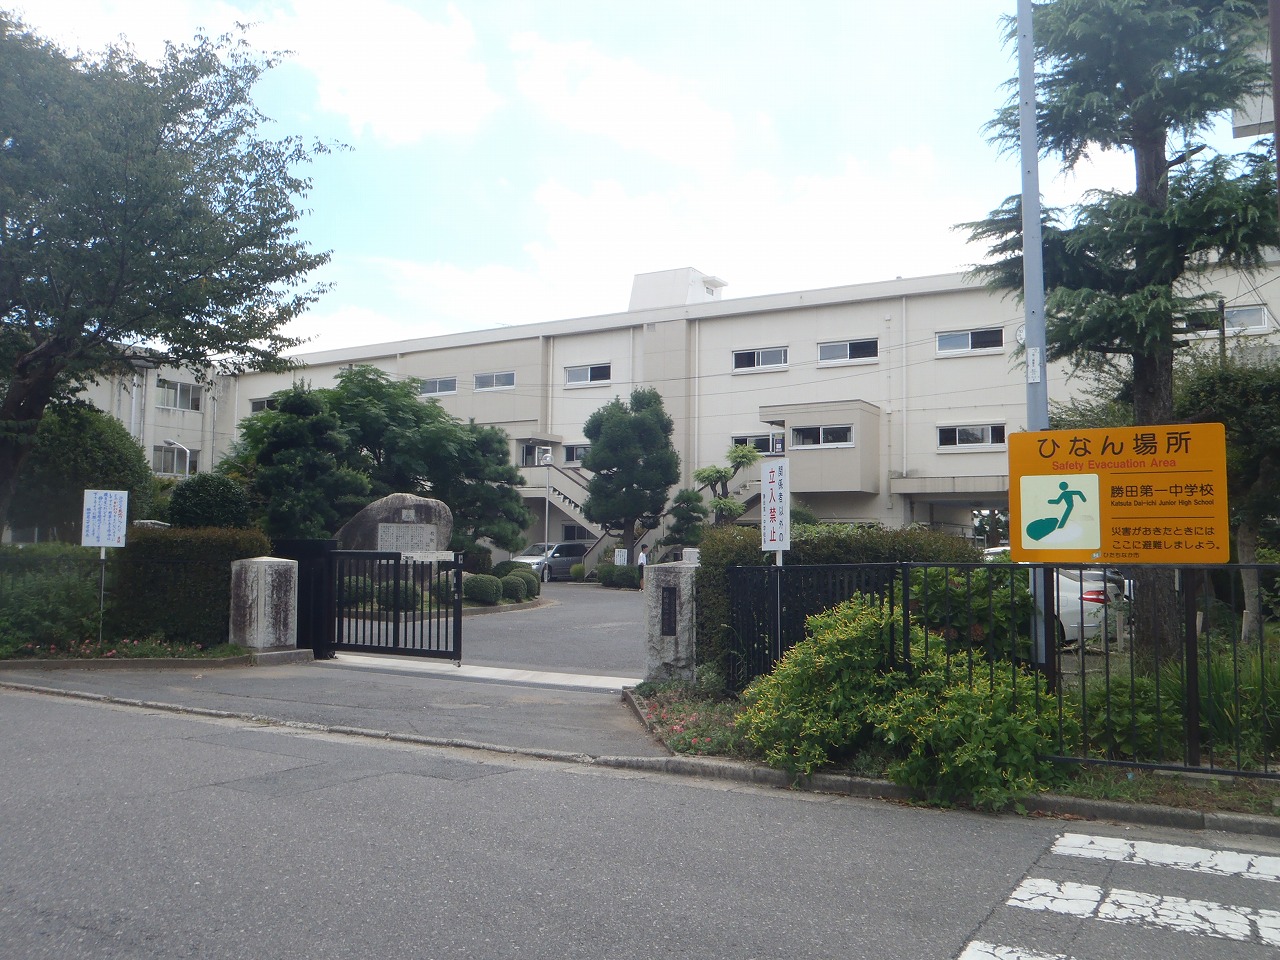 Junior high school. Hitachinaka Municipal Katsuta first junior high school (junior high school) up to 920m